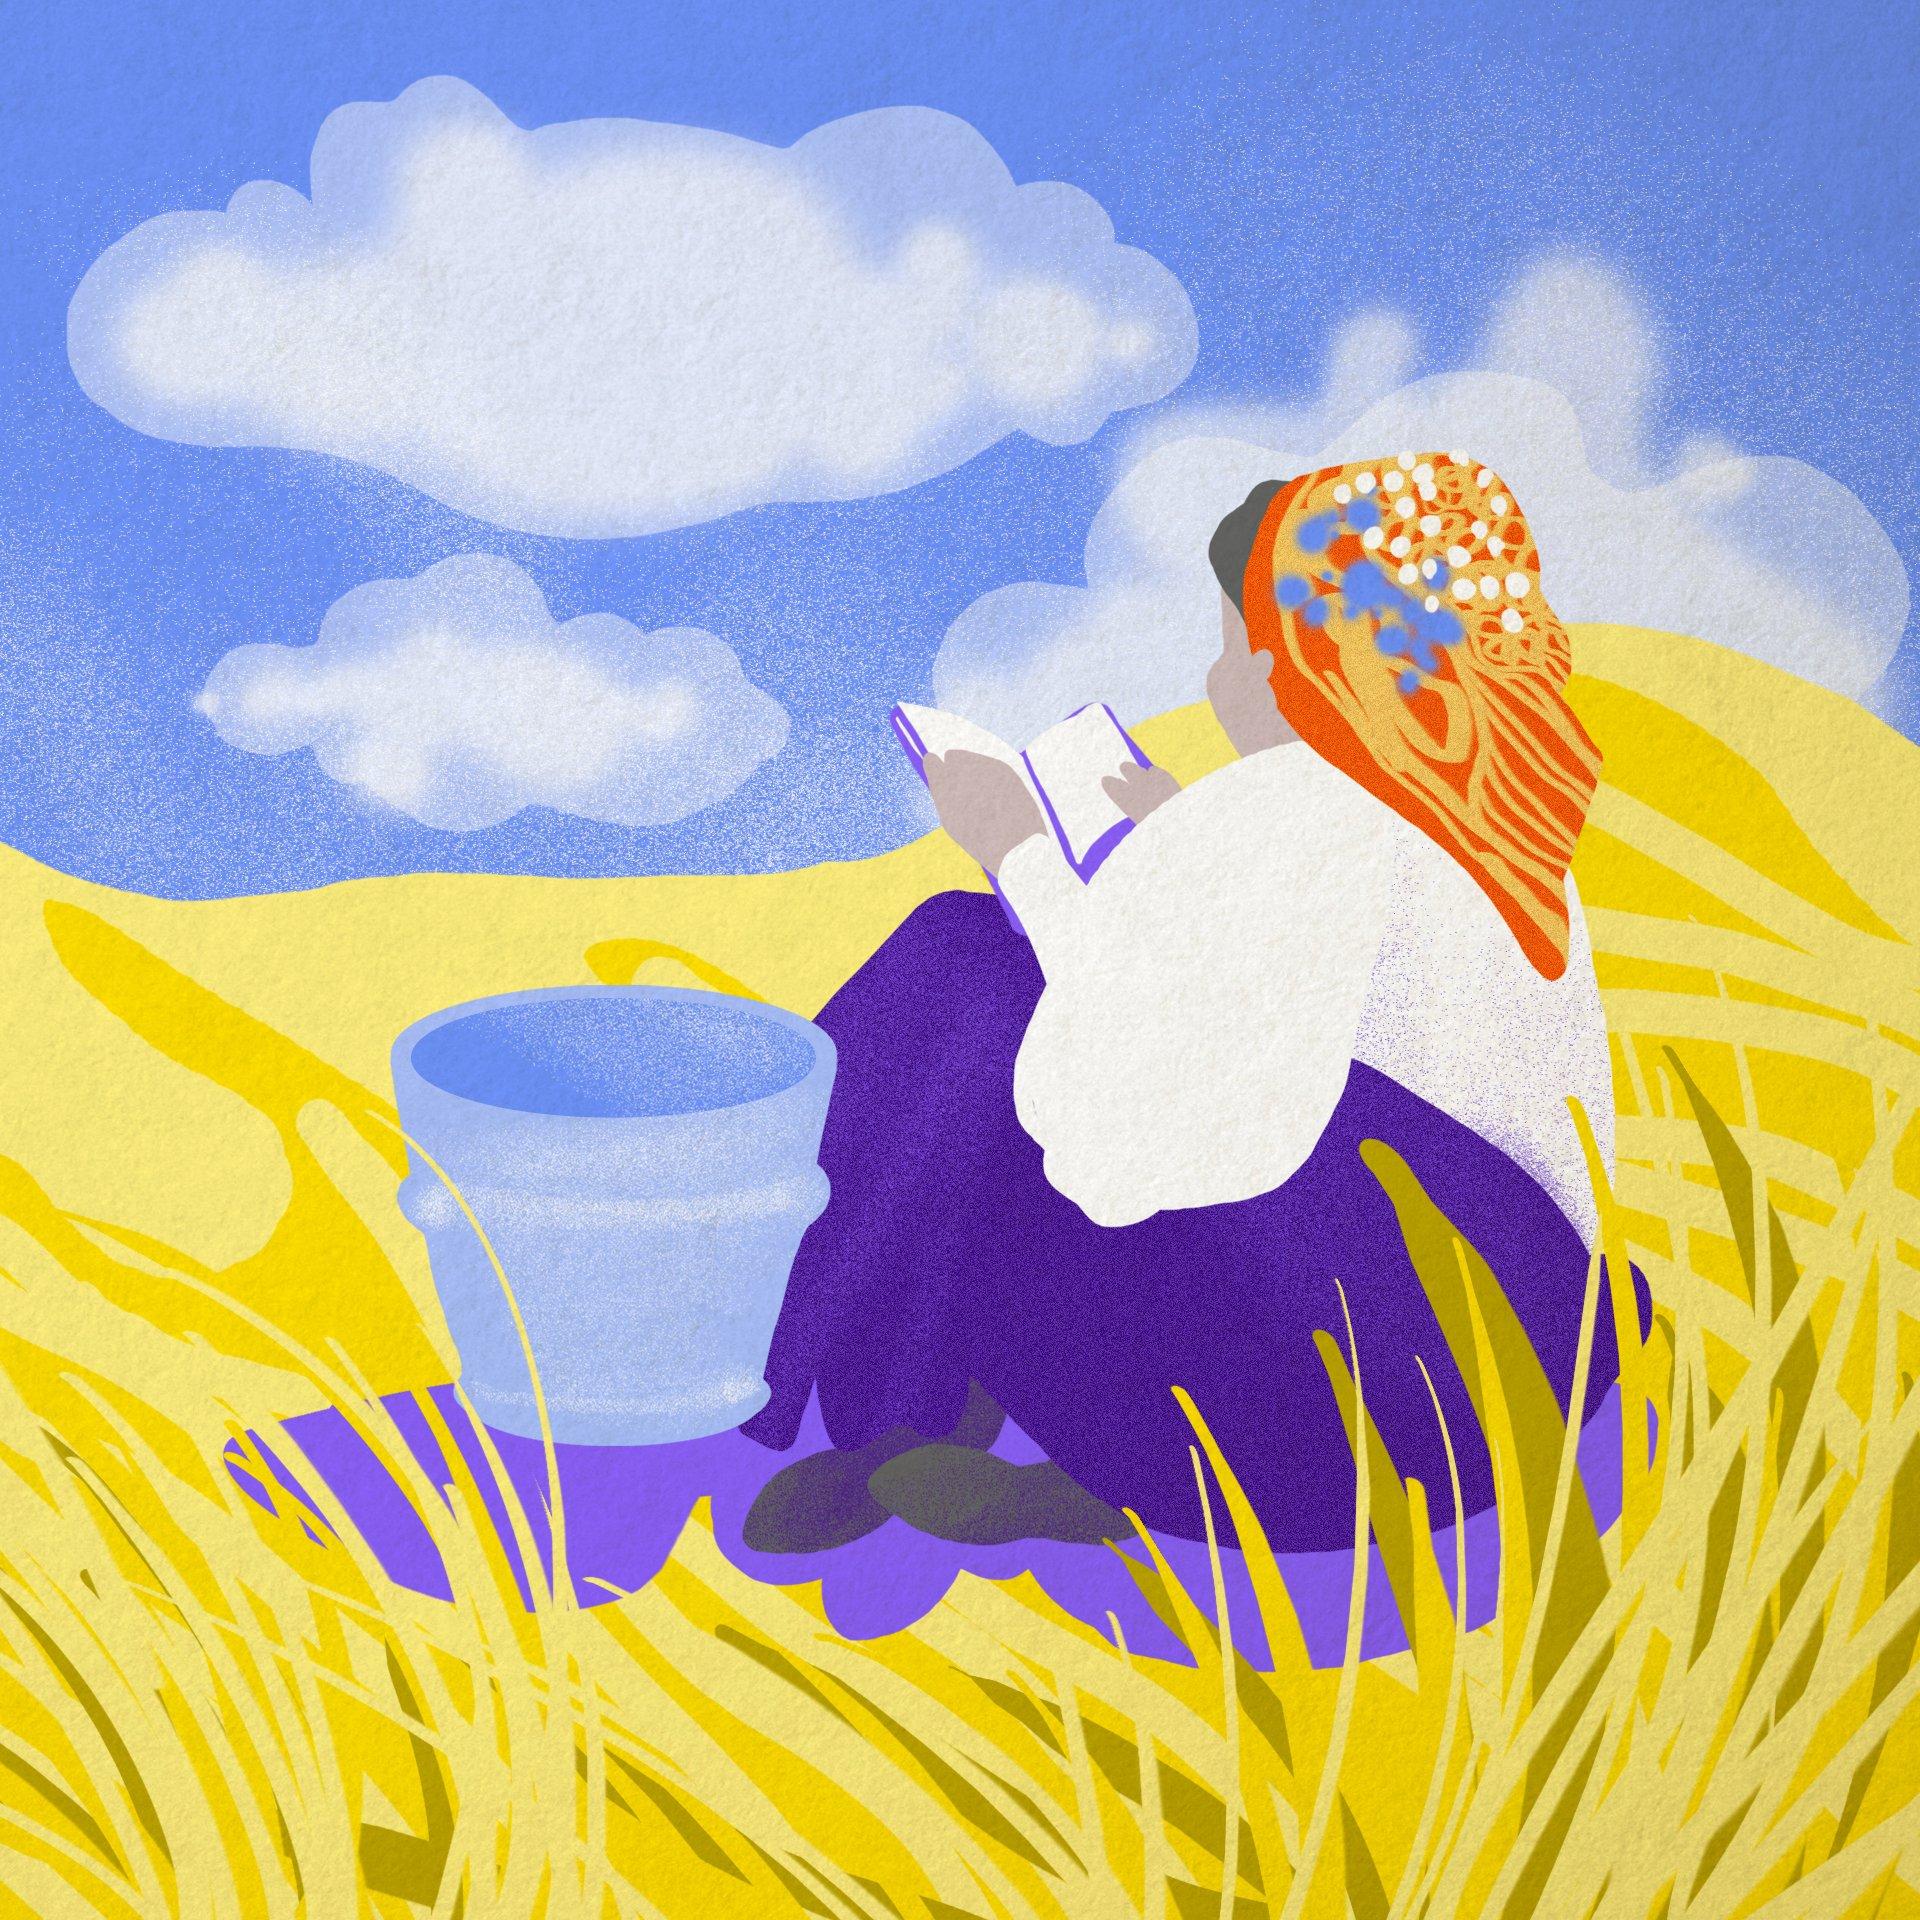 Iustracja przedstawiająca kobietę w chustce na głowie, która siedzi w łanie zboża i czyta książkę. Obok niej stoi wiadro.